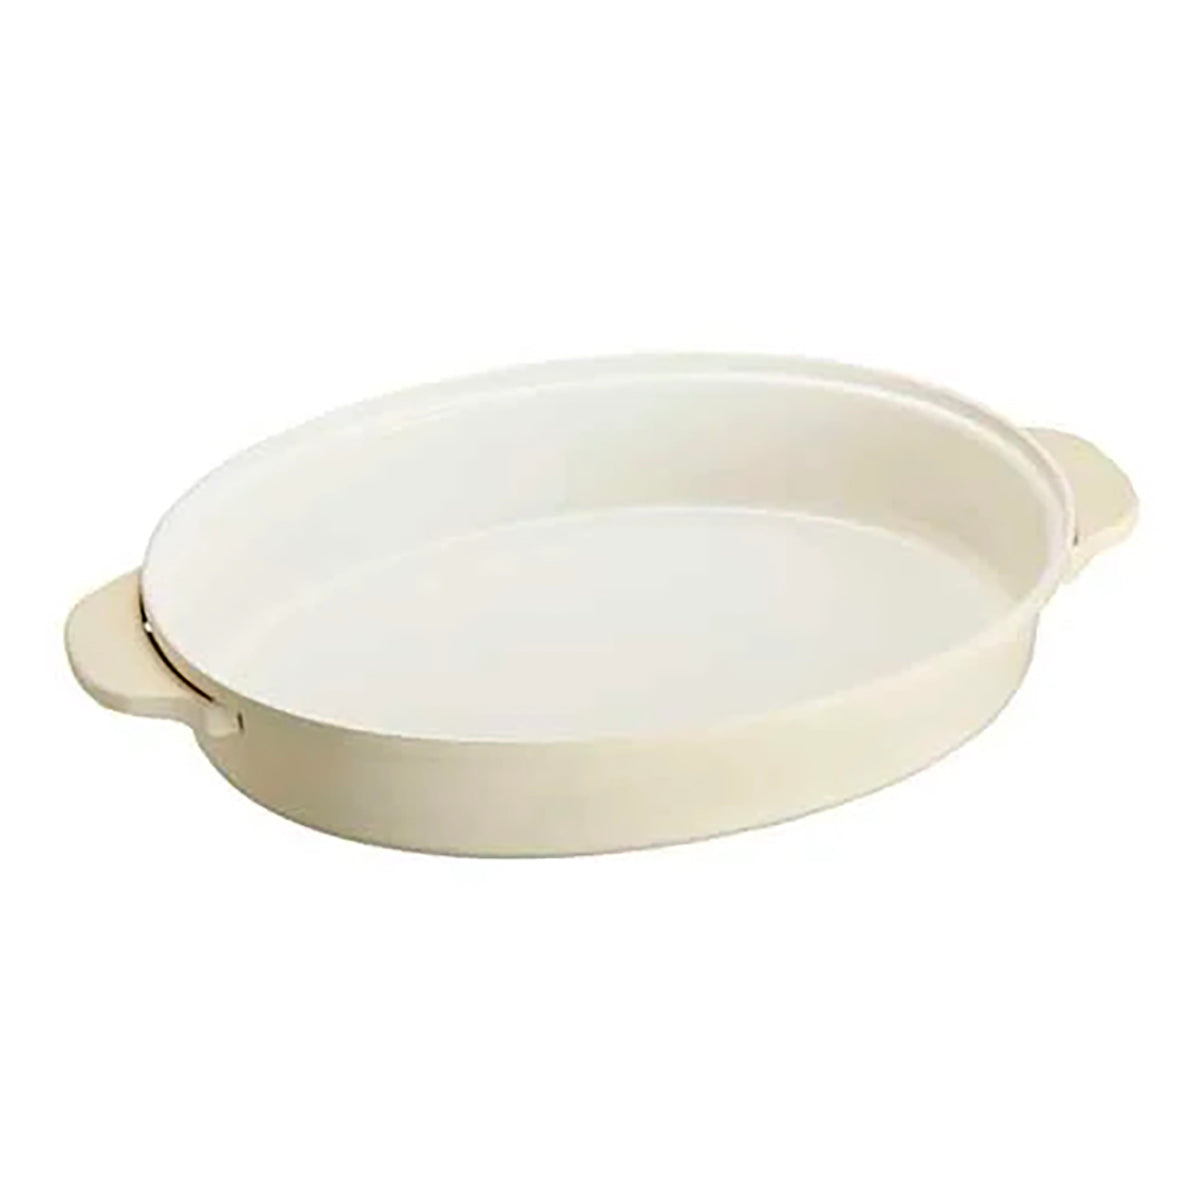 BRUNO 陶瓷深鍋 - 替換用 (橢圓電熱鍋 / Oval Hot Plate 專用)